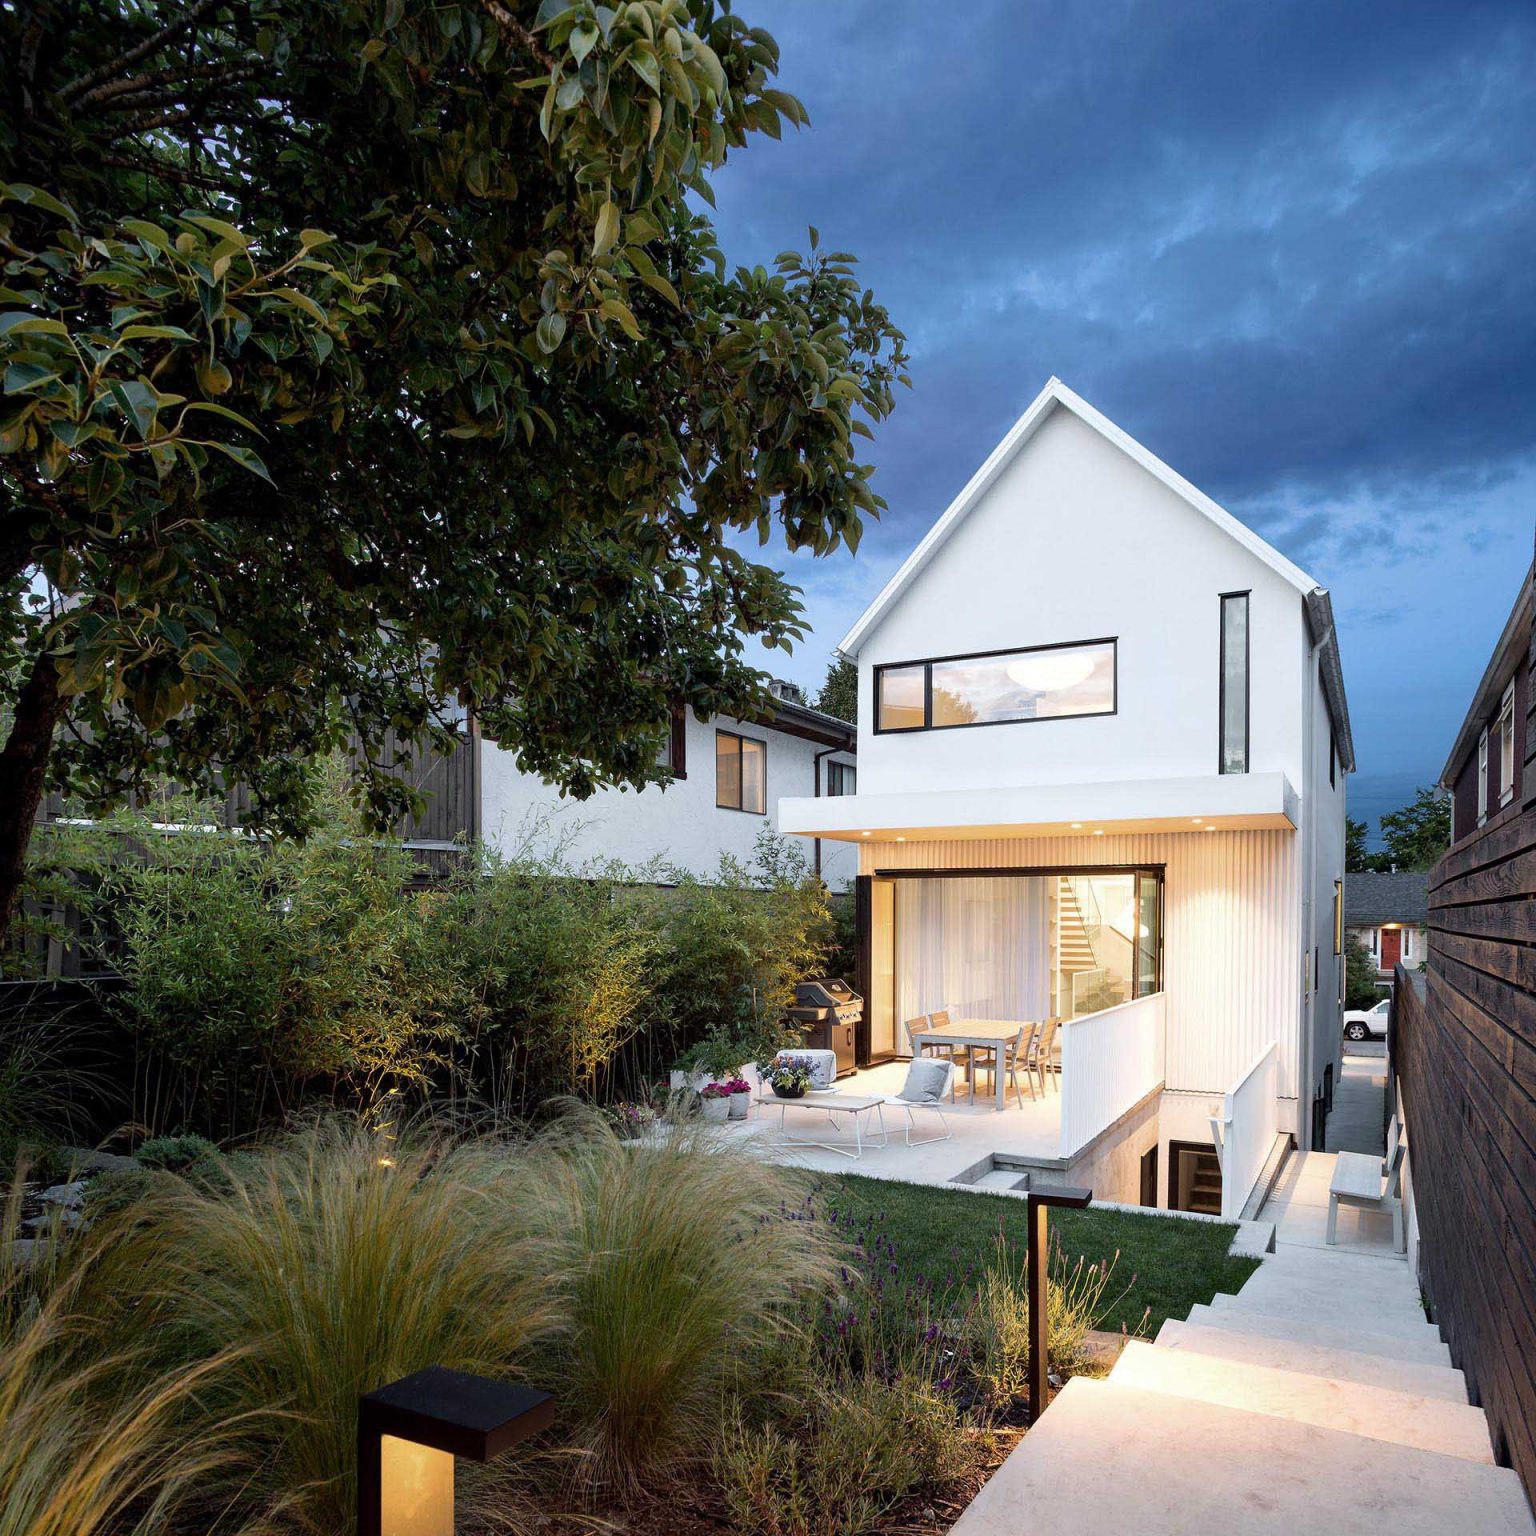 Ngôi nhà có ngoại thất màu trắng có khả năng bắt sáng tốt mang lại vẻ đẹp tinh tế và sang trọng - Ảnh 6.